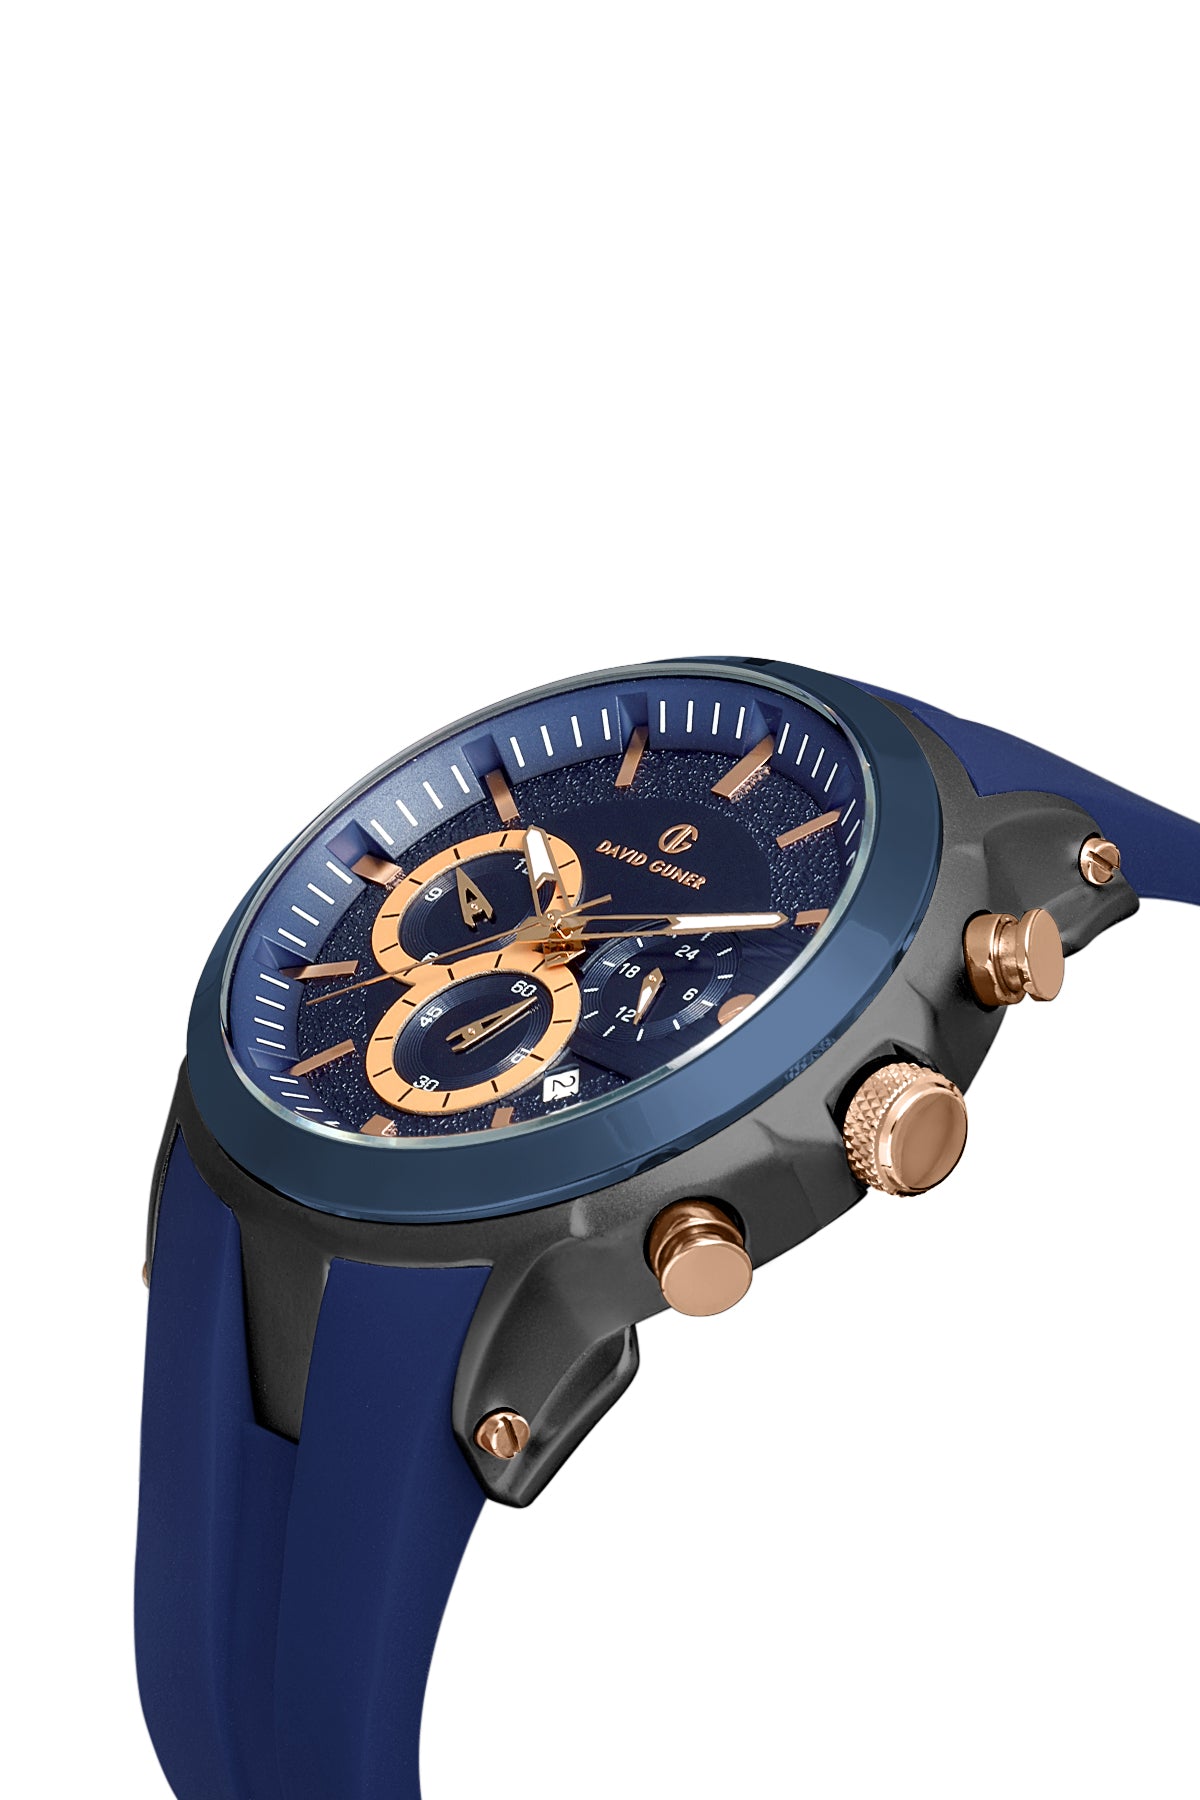 David Guner Blue Gun Plated Men's Wristwatch with Silicone Strap